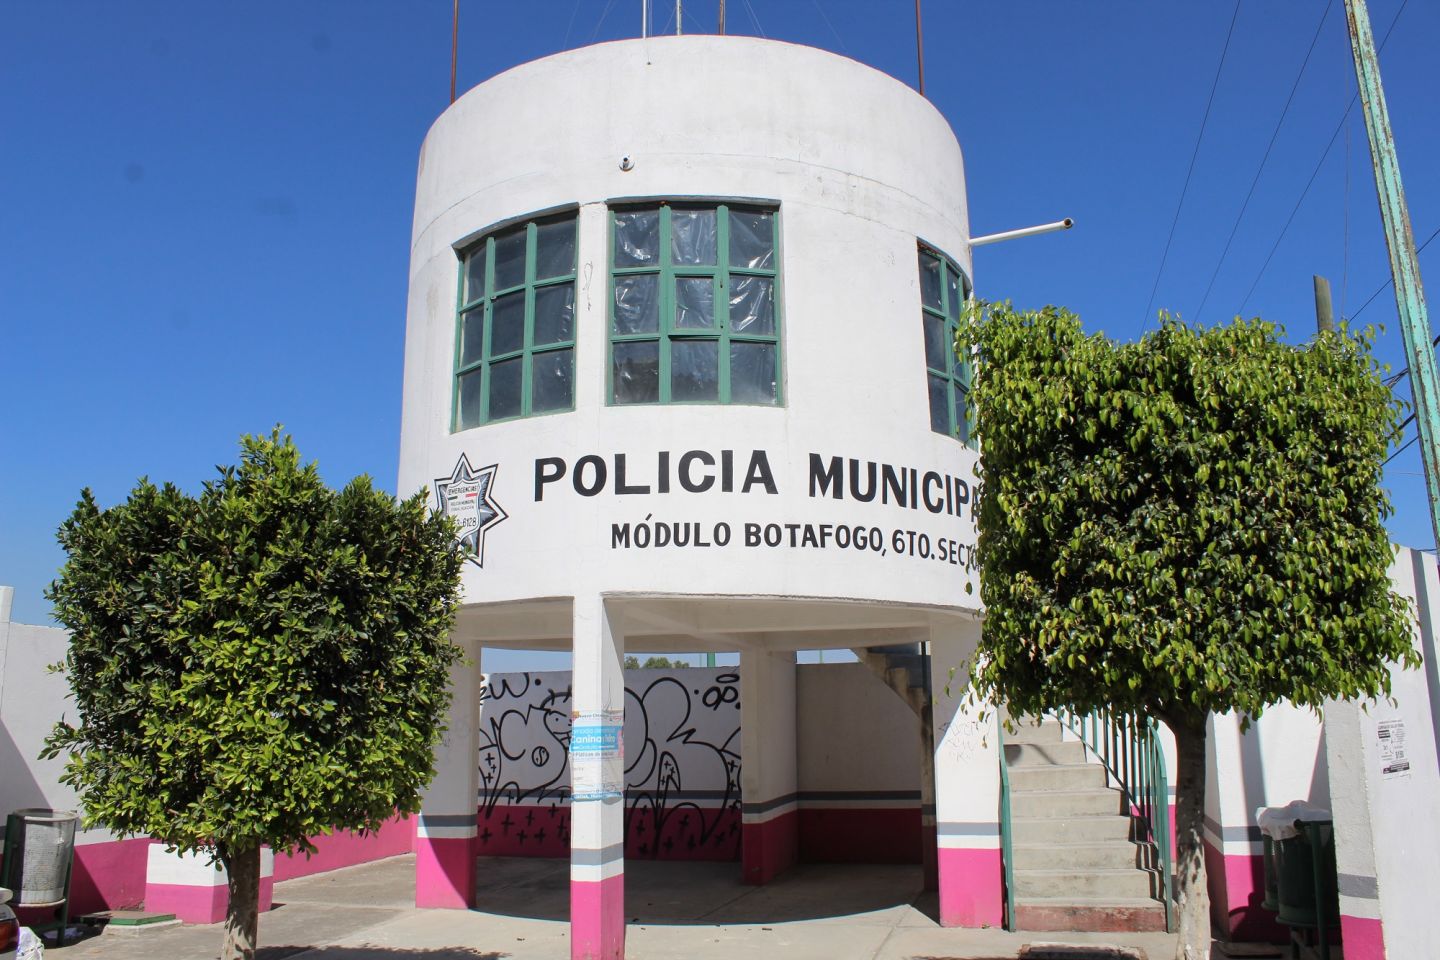 Policía de Chimalhuacán impulsa la recuperación de espacios públicos 